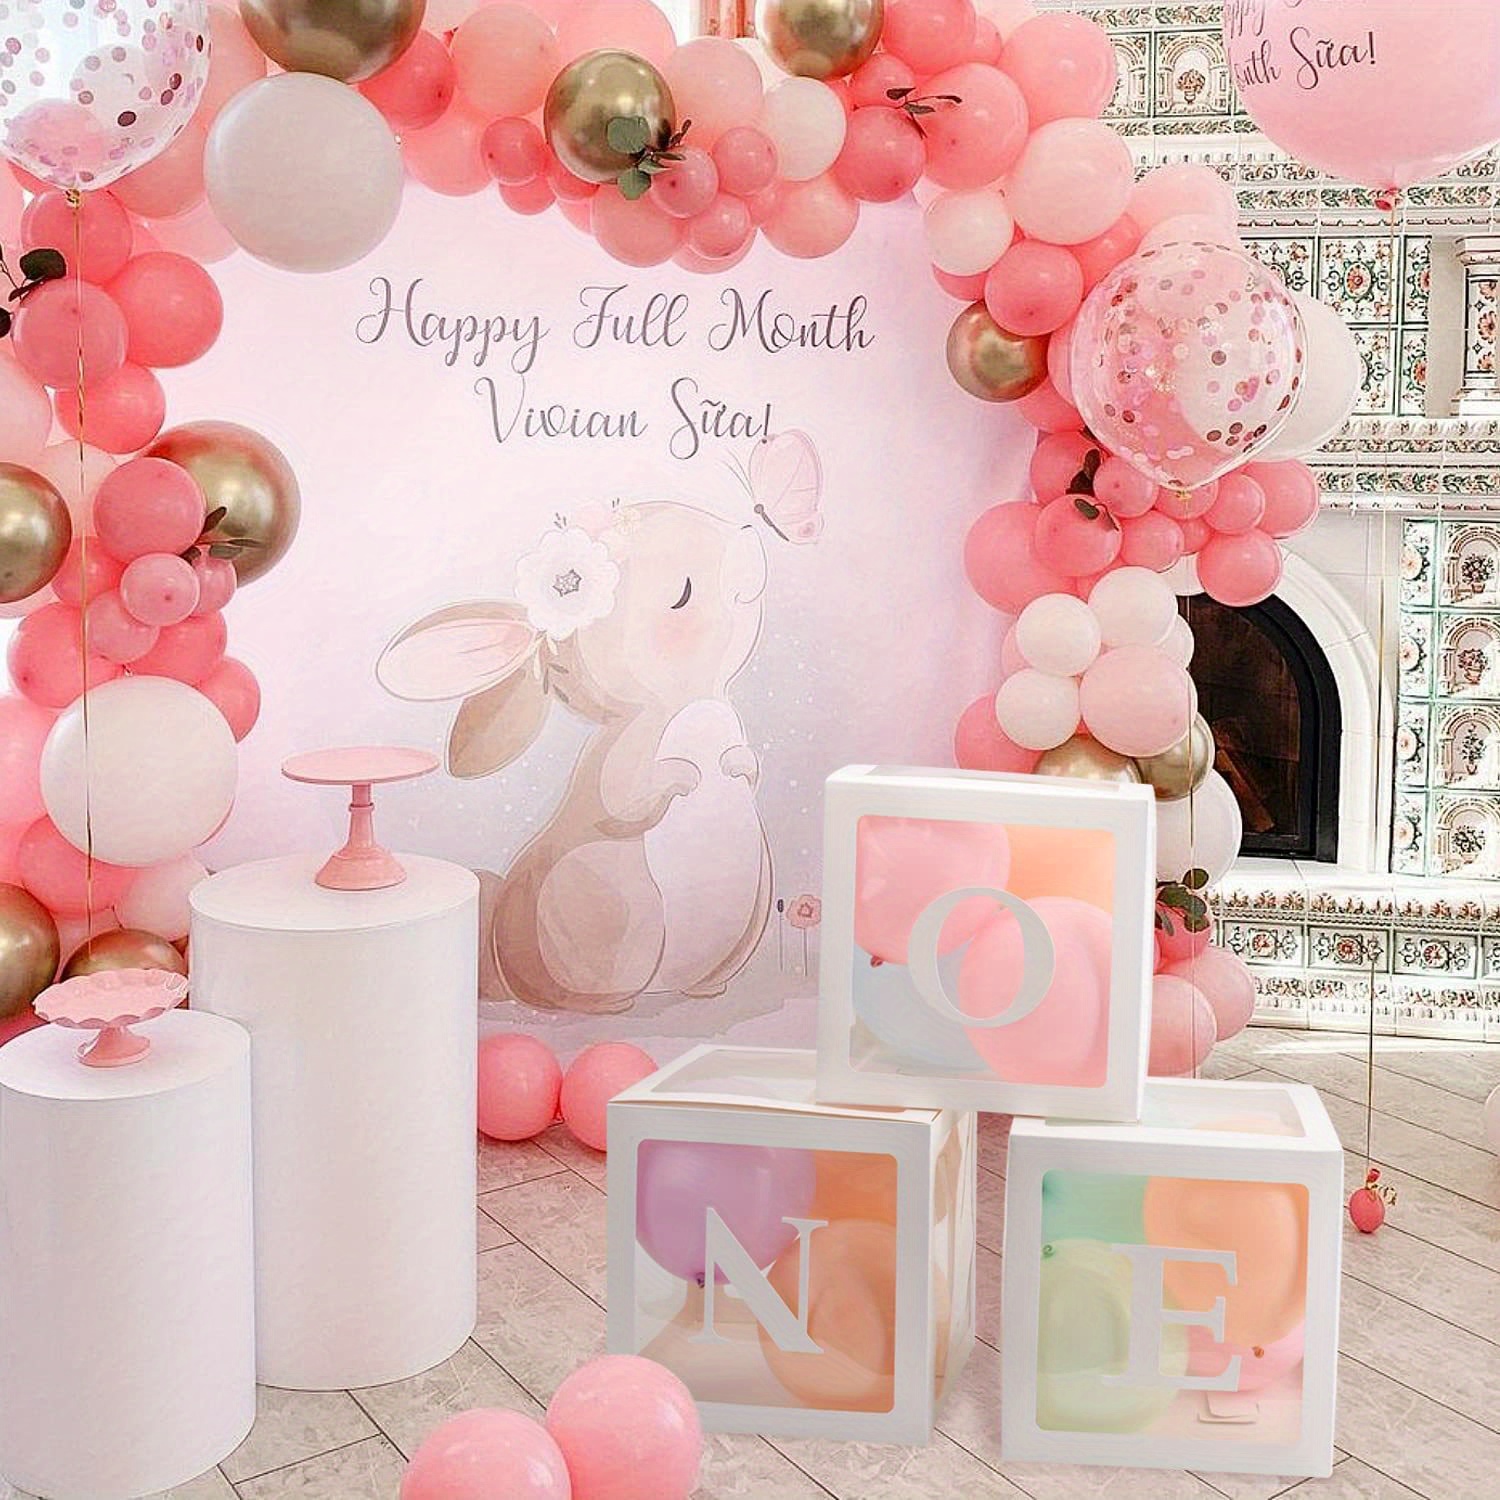  Decoraciones de primer cumpleaños para niña y niño, 3 cajas  estereoscópicas de globos con una letra para suministros de fiesta de primer  cumpleaños de bebé, bloques de cubo para fotografía ABC